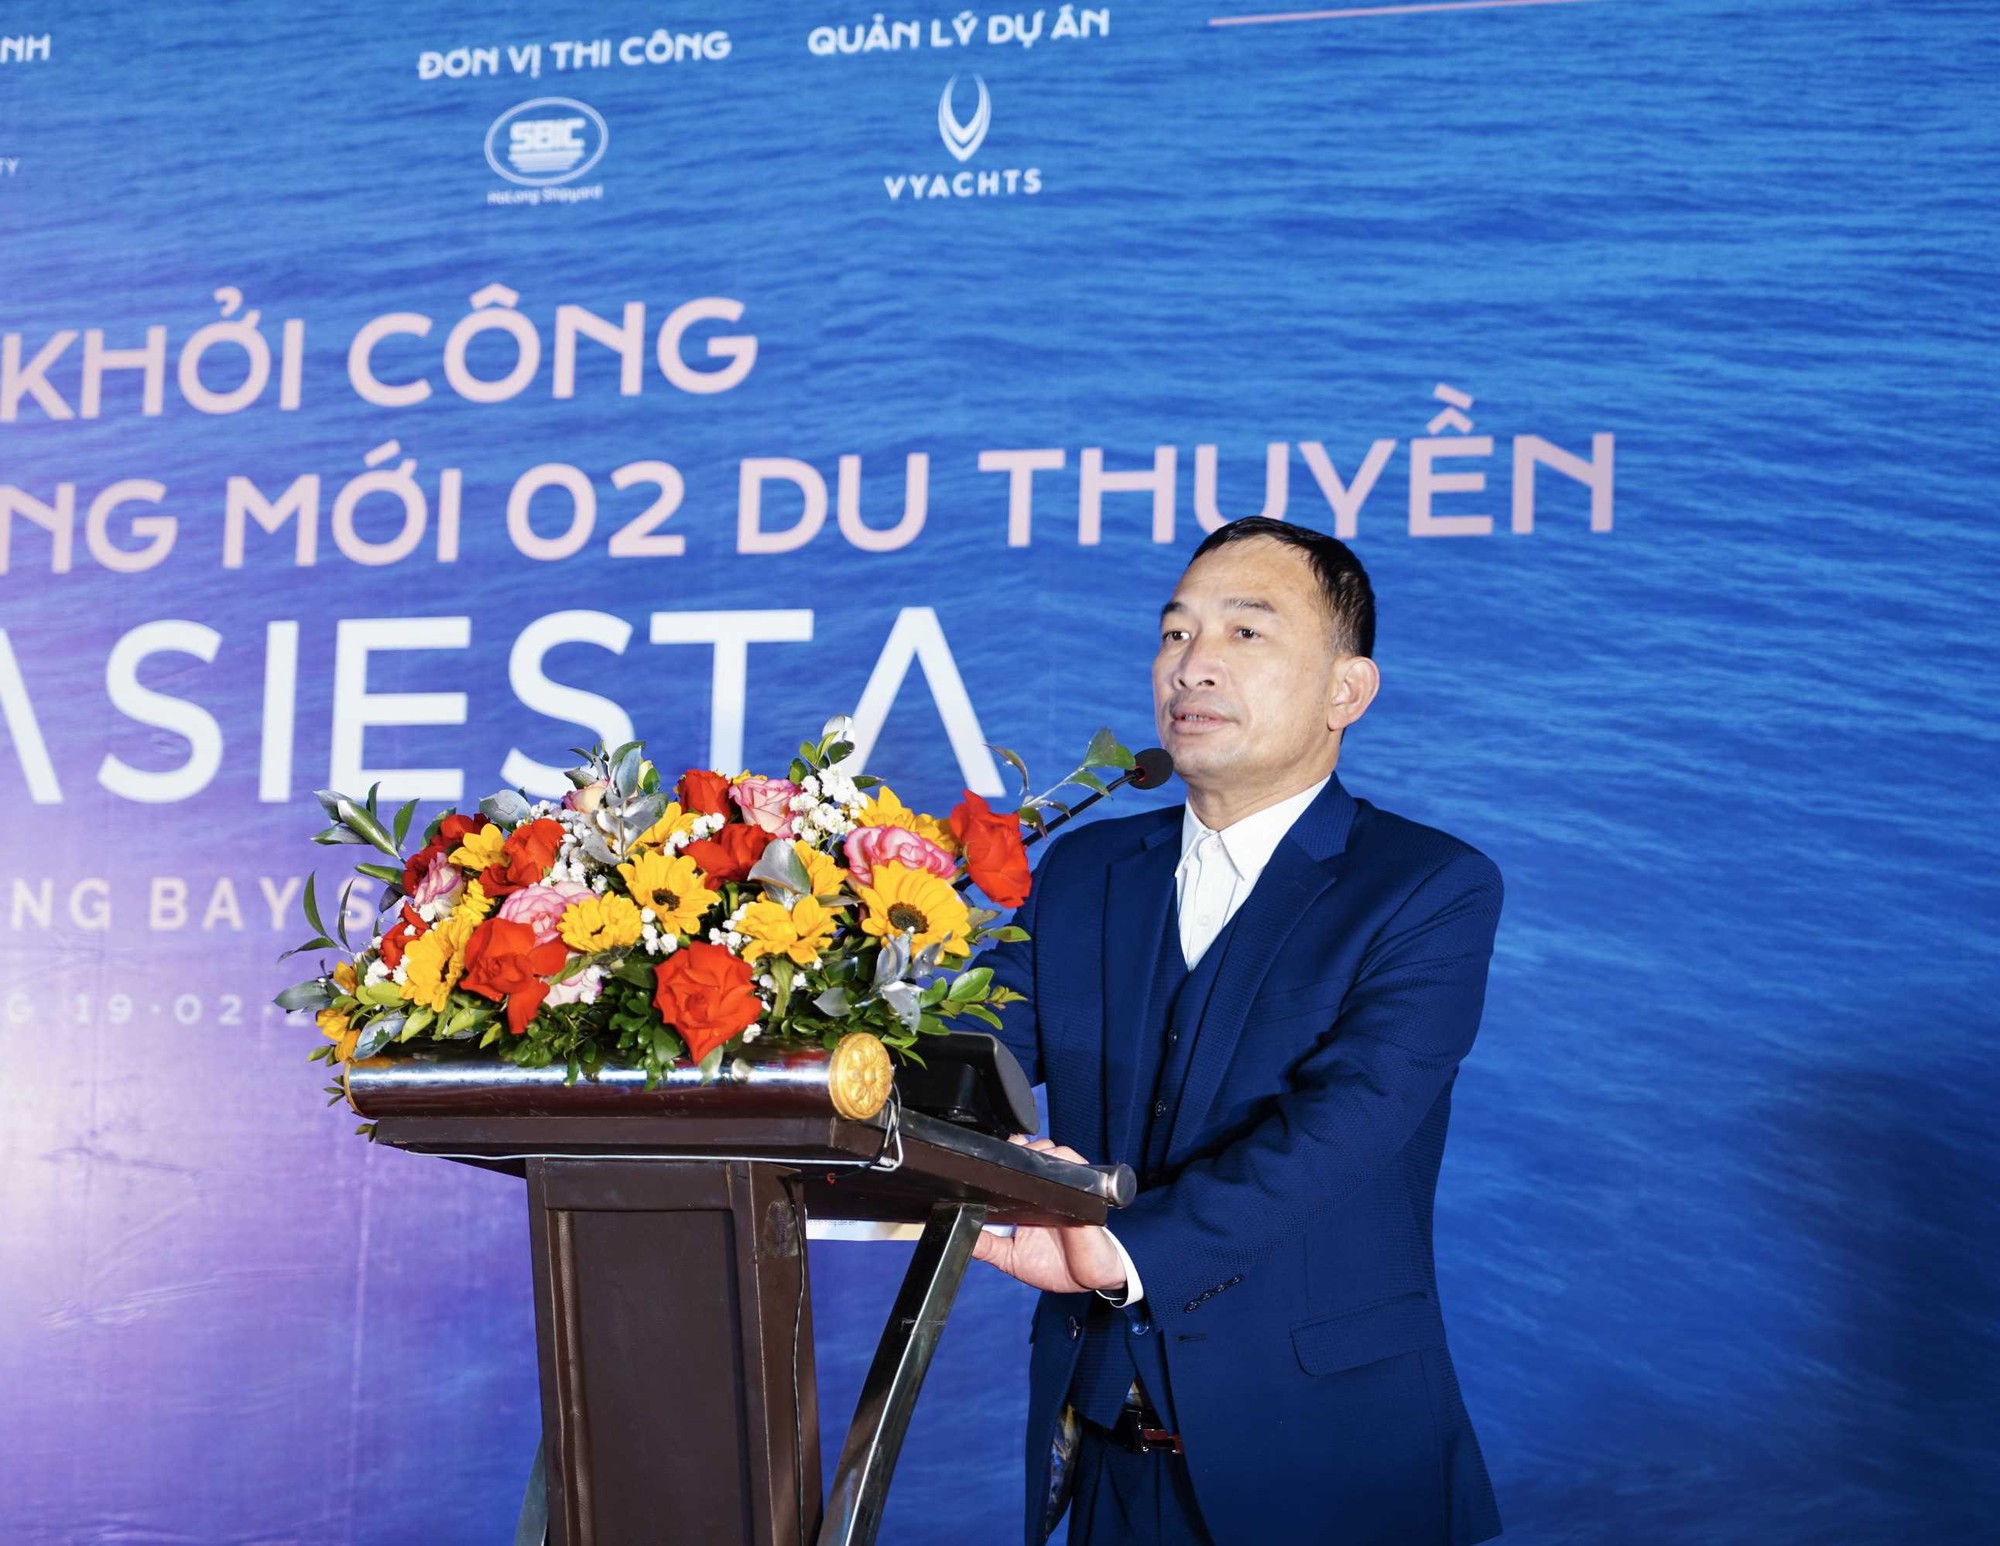 DN sở hữu cặp du thuyền 6 sao lớn nhất Việt Nam có sân đỗ trực thăng vừa bị cưỡng chế hơn 60 tỷ đồng tiền thuế - Ảnh 1.